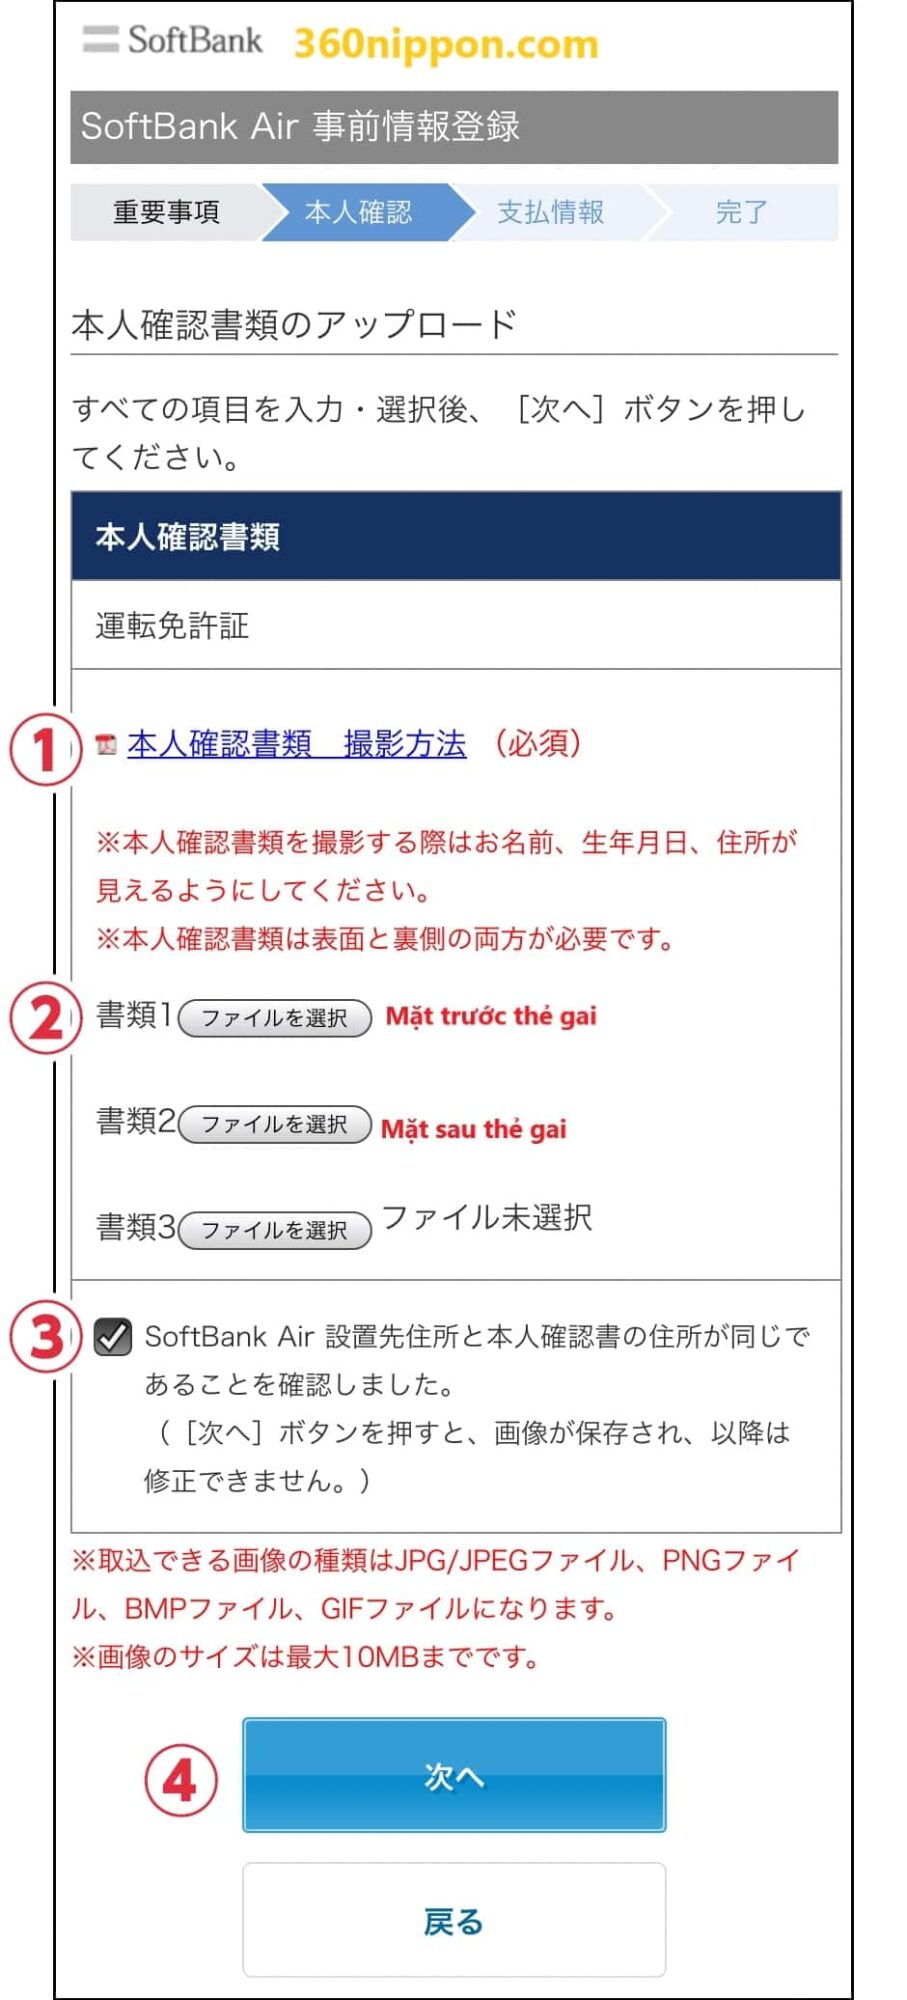 Hướng dẫn cách tự đăng ký wifi cố định softbank ở Nhật 116